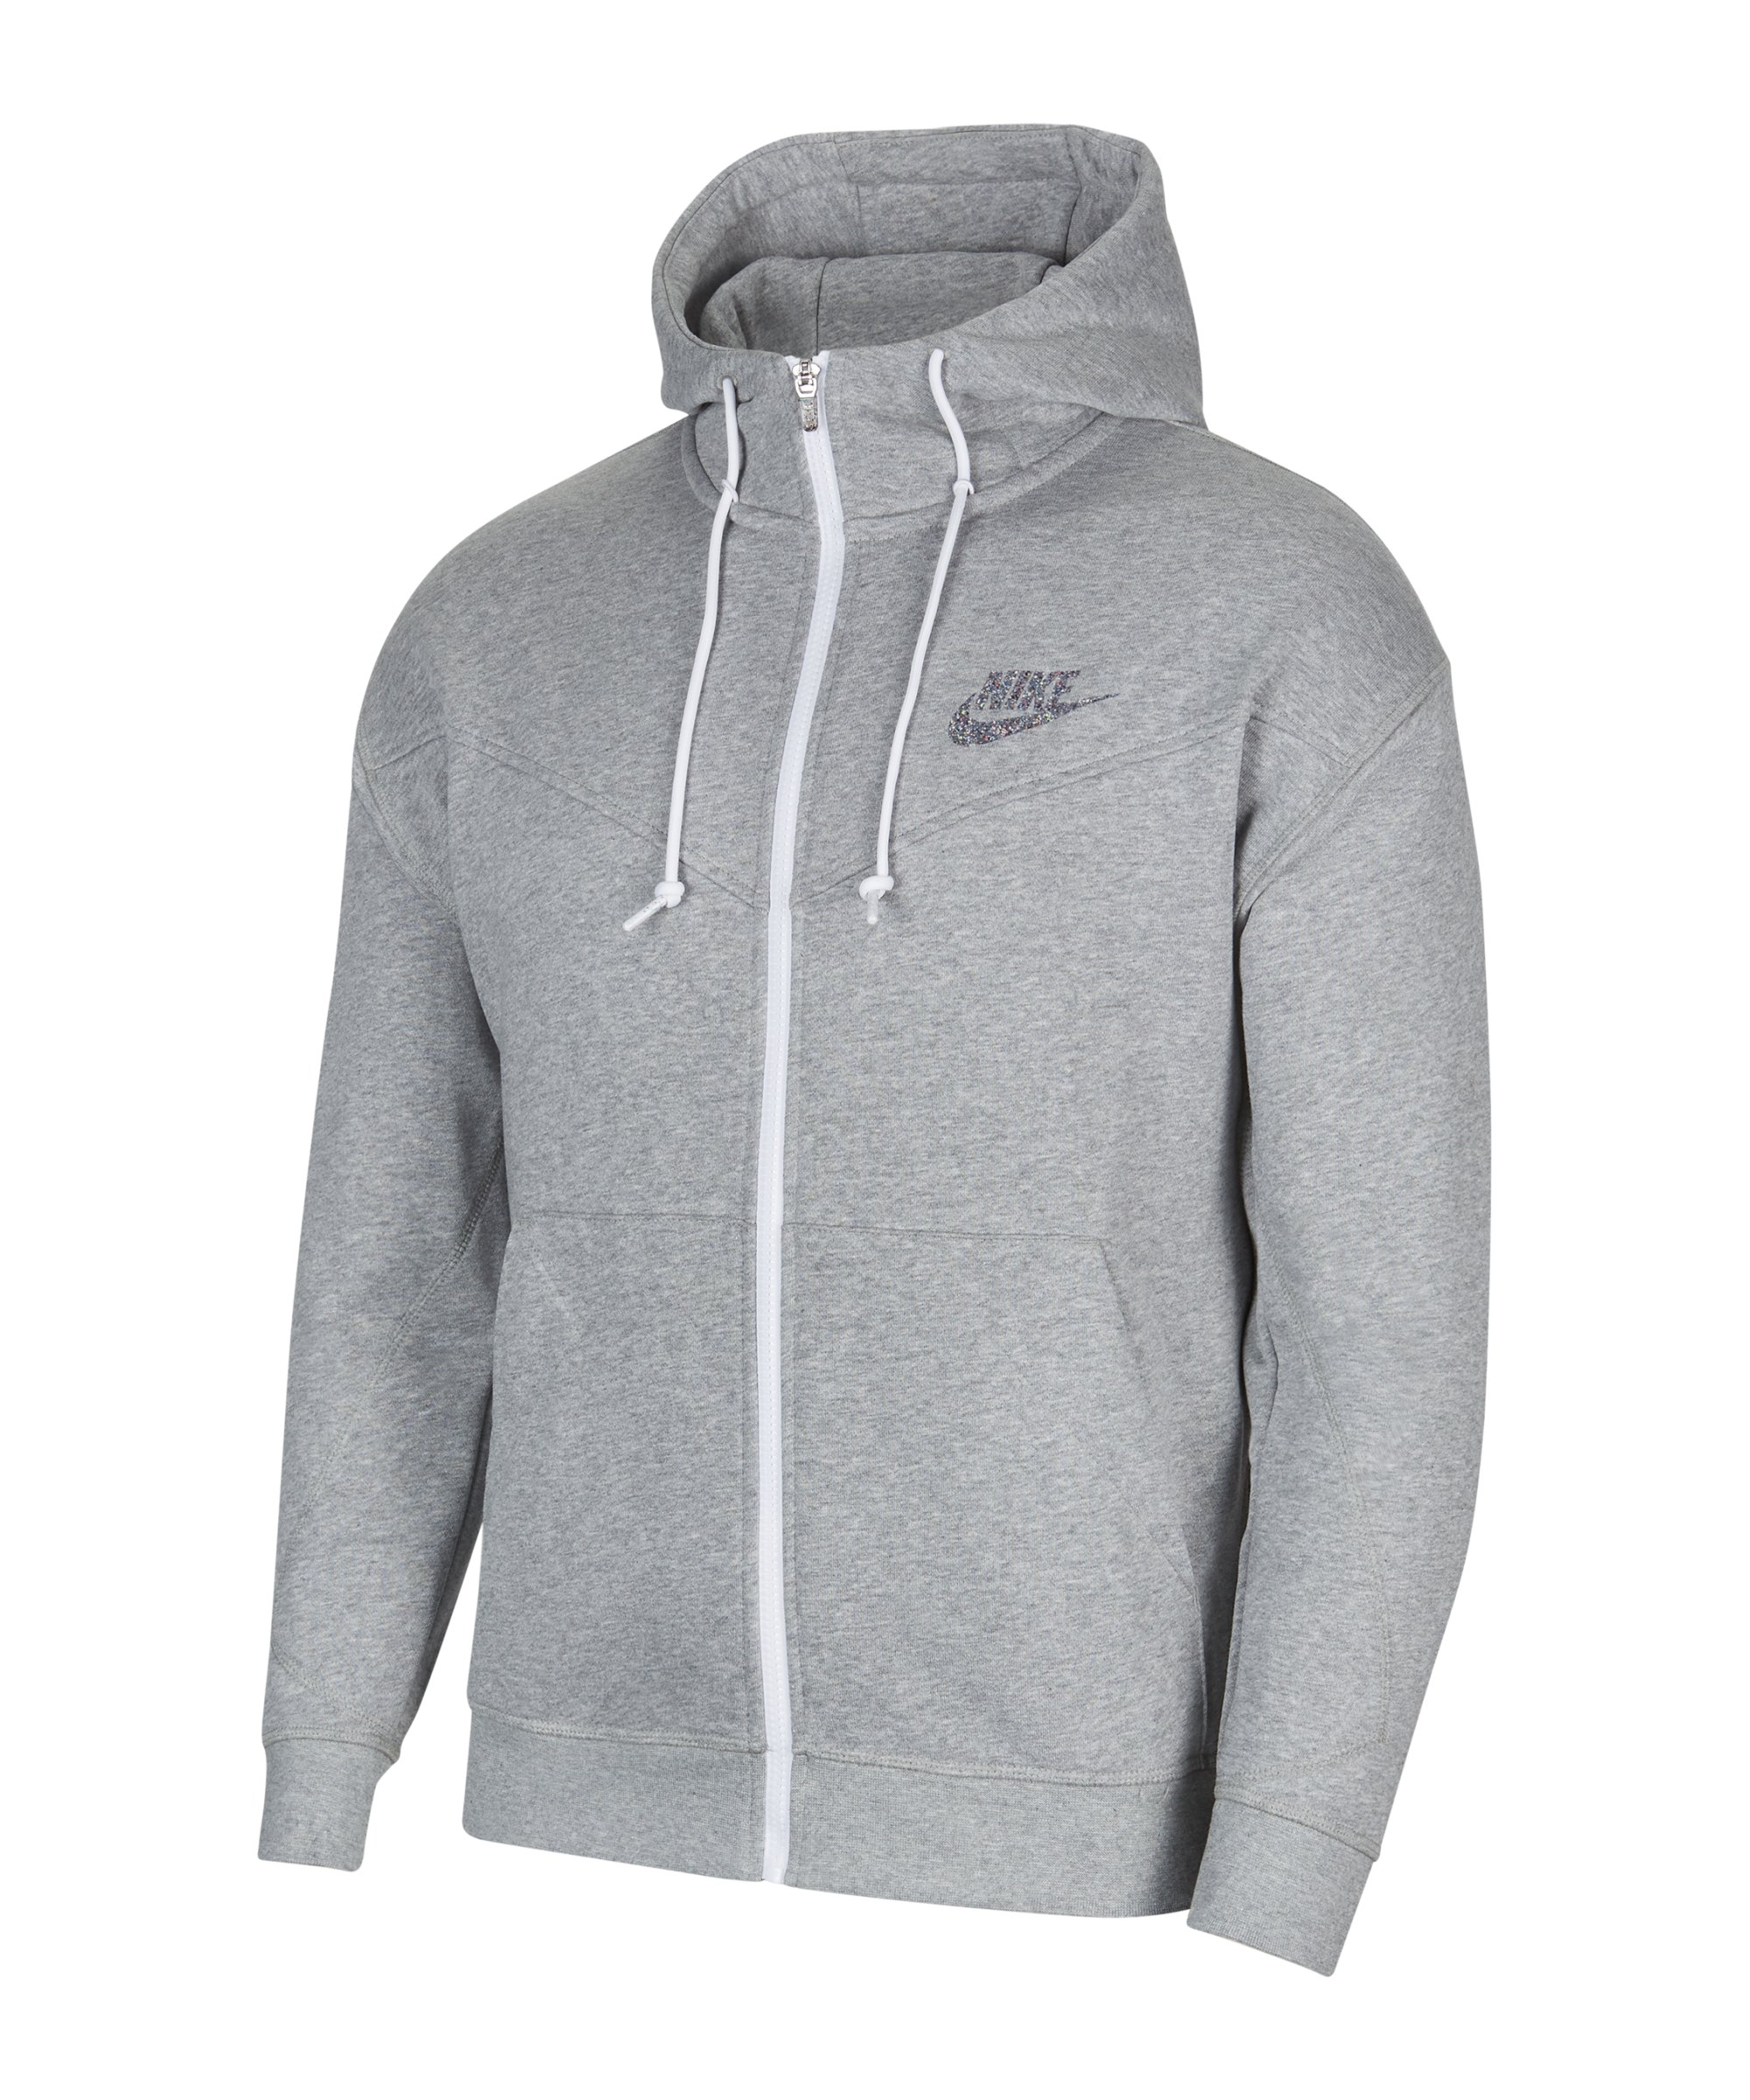 Nike Essentials Kapuzenjacke Grau F063 - grau